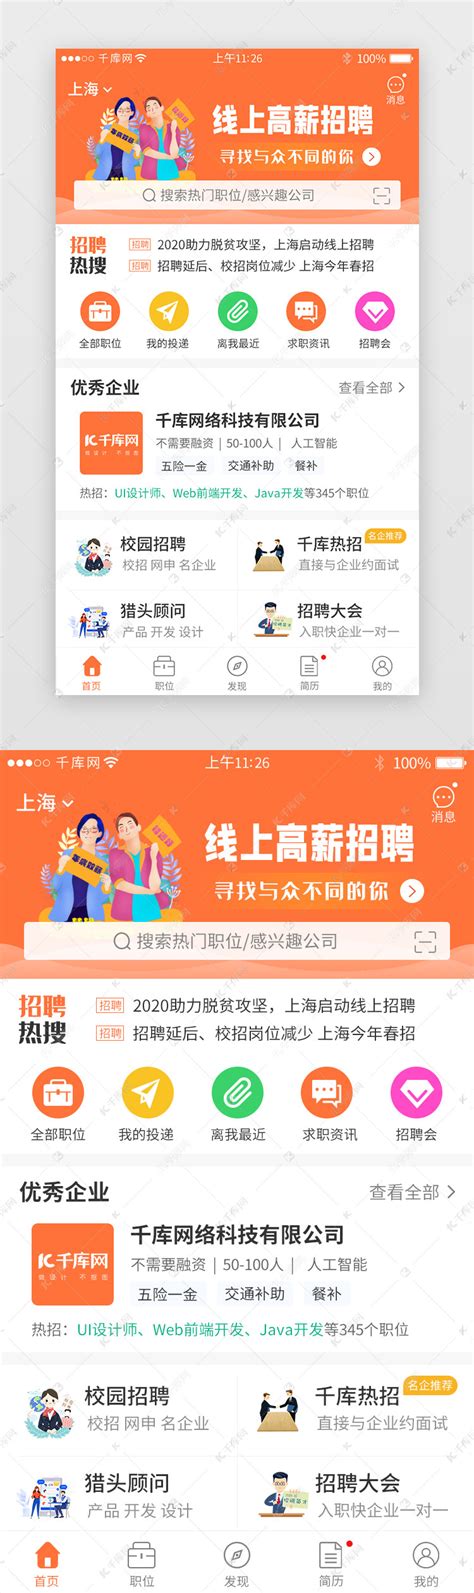 橙色系招聘求职app主界面ui界面设计素材-千库网